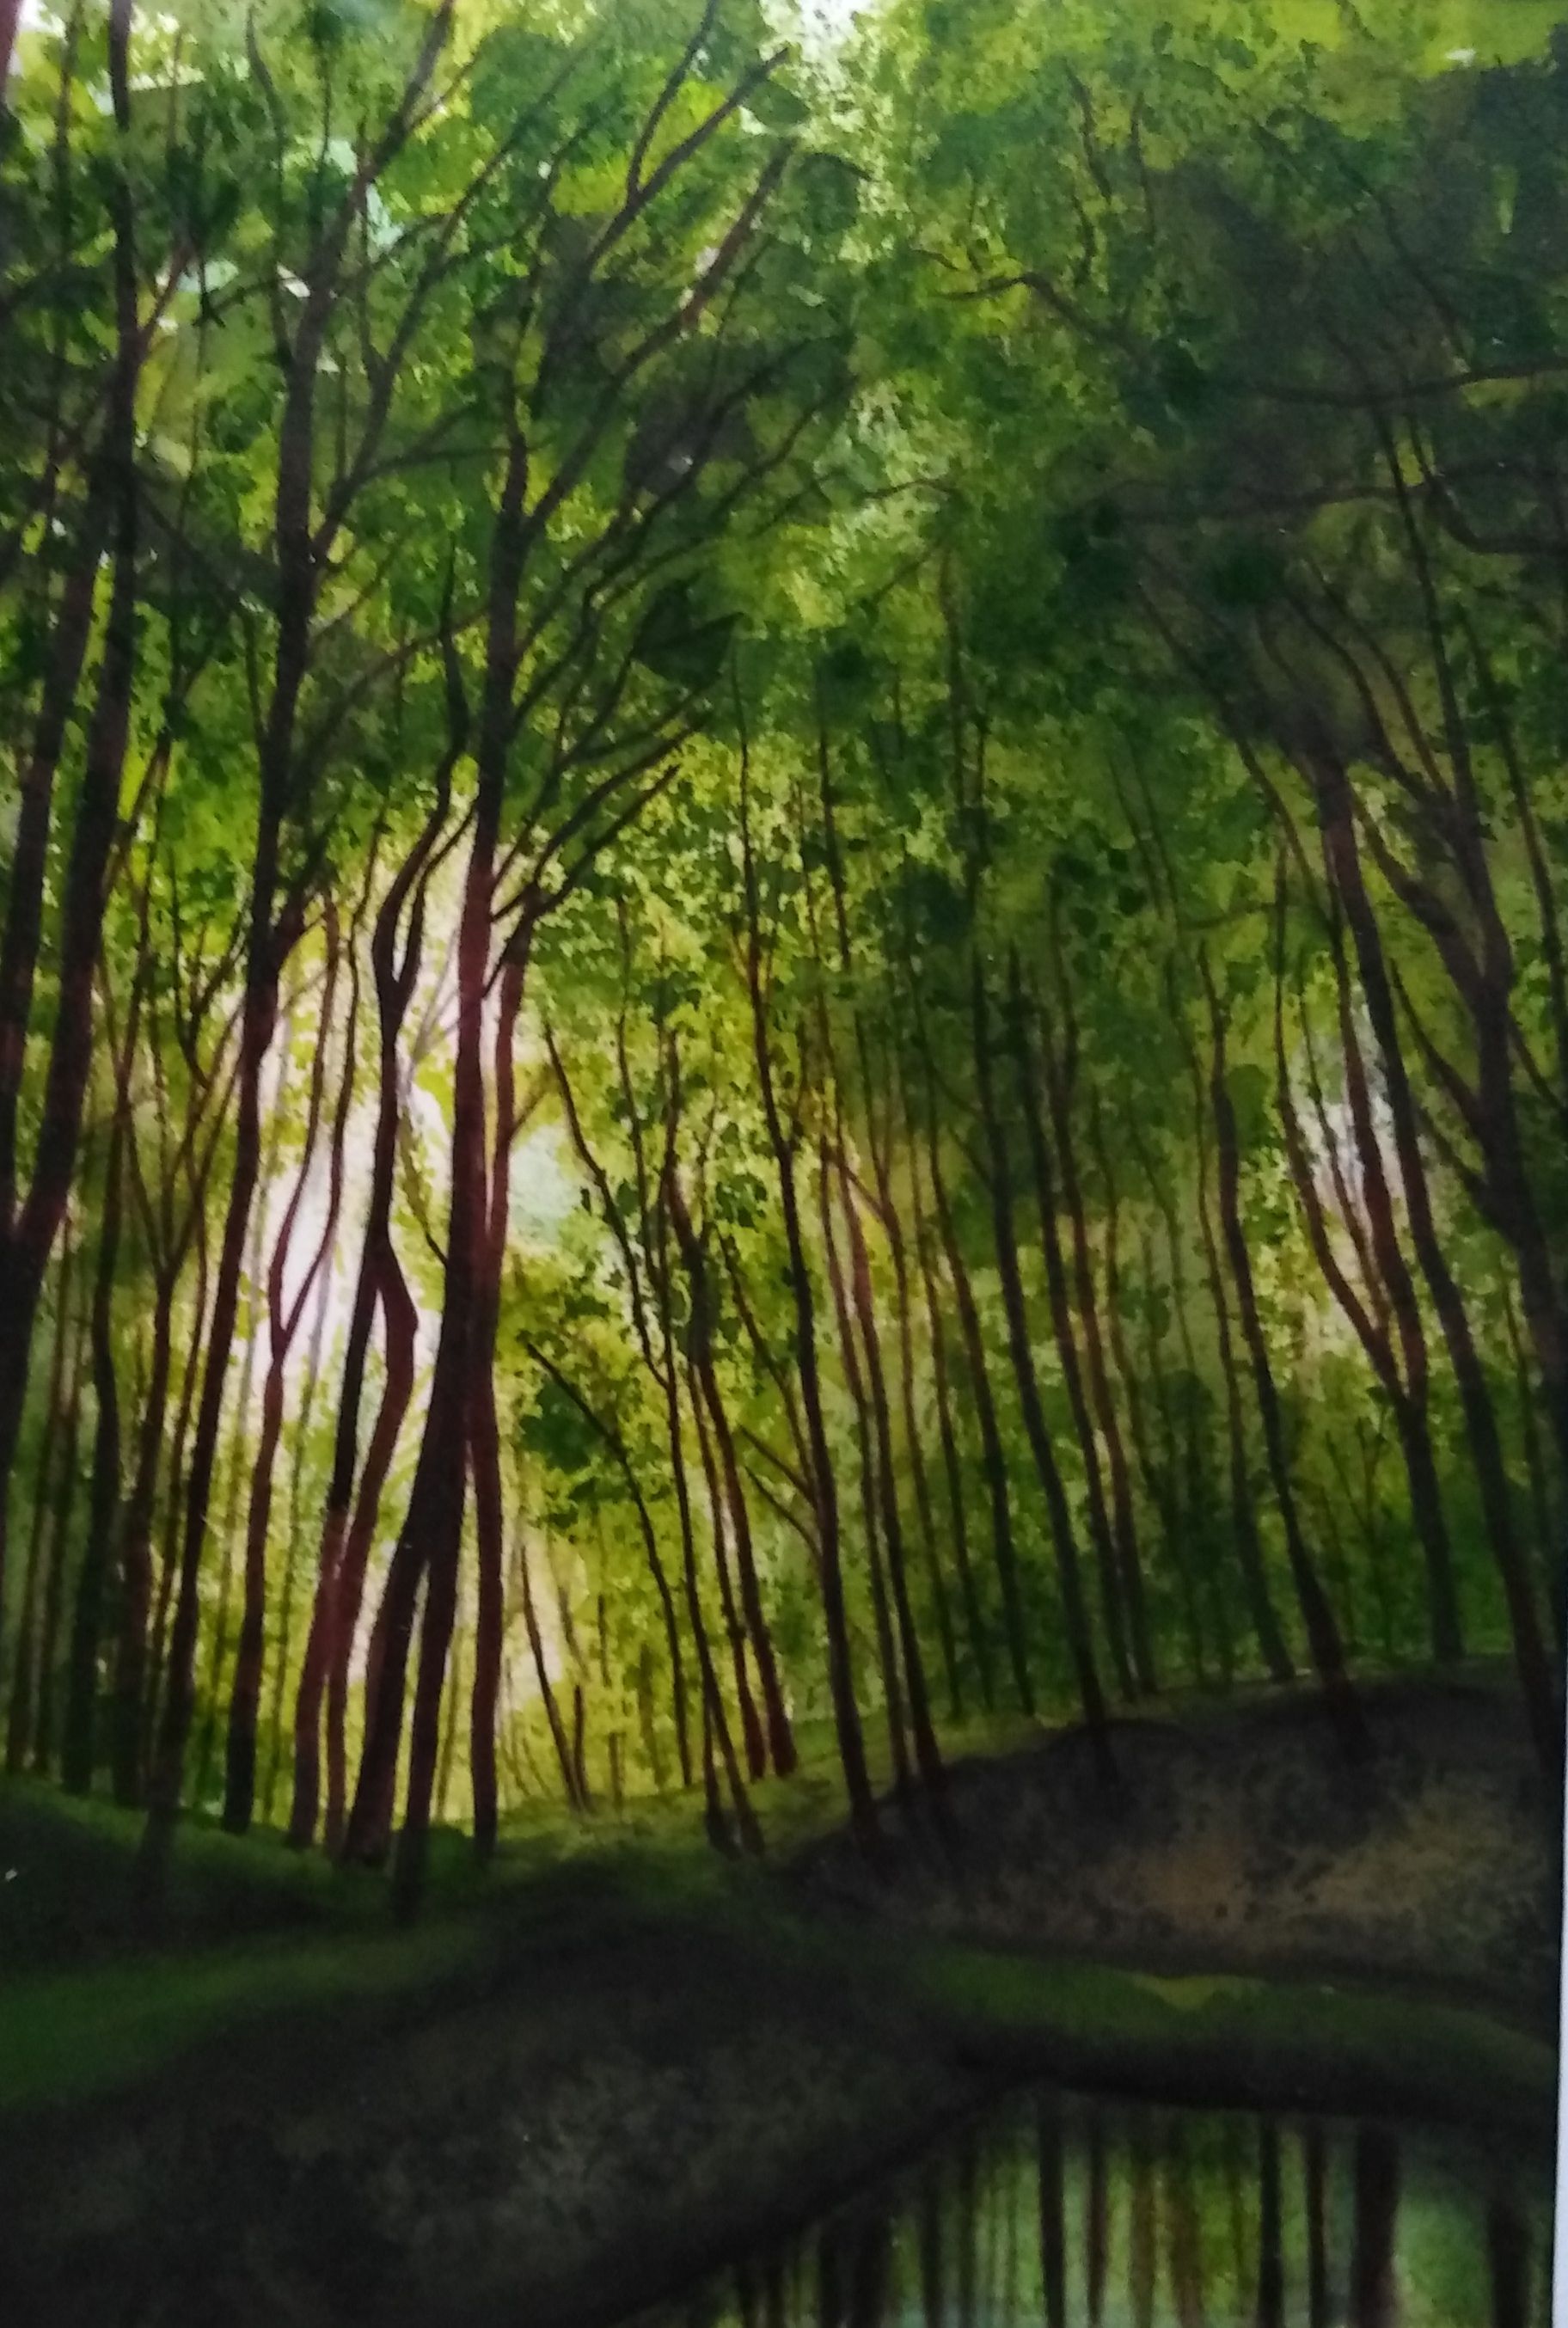 Erdőt ábrázoló festmény fotója